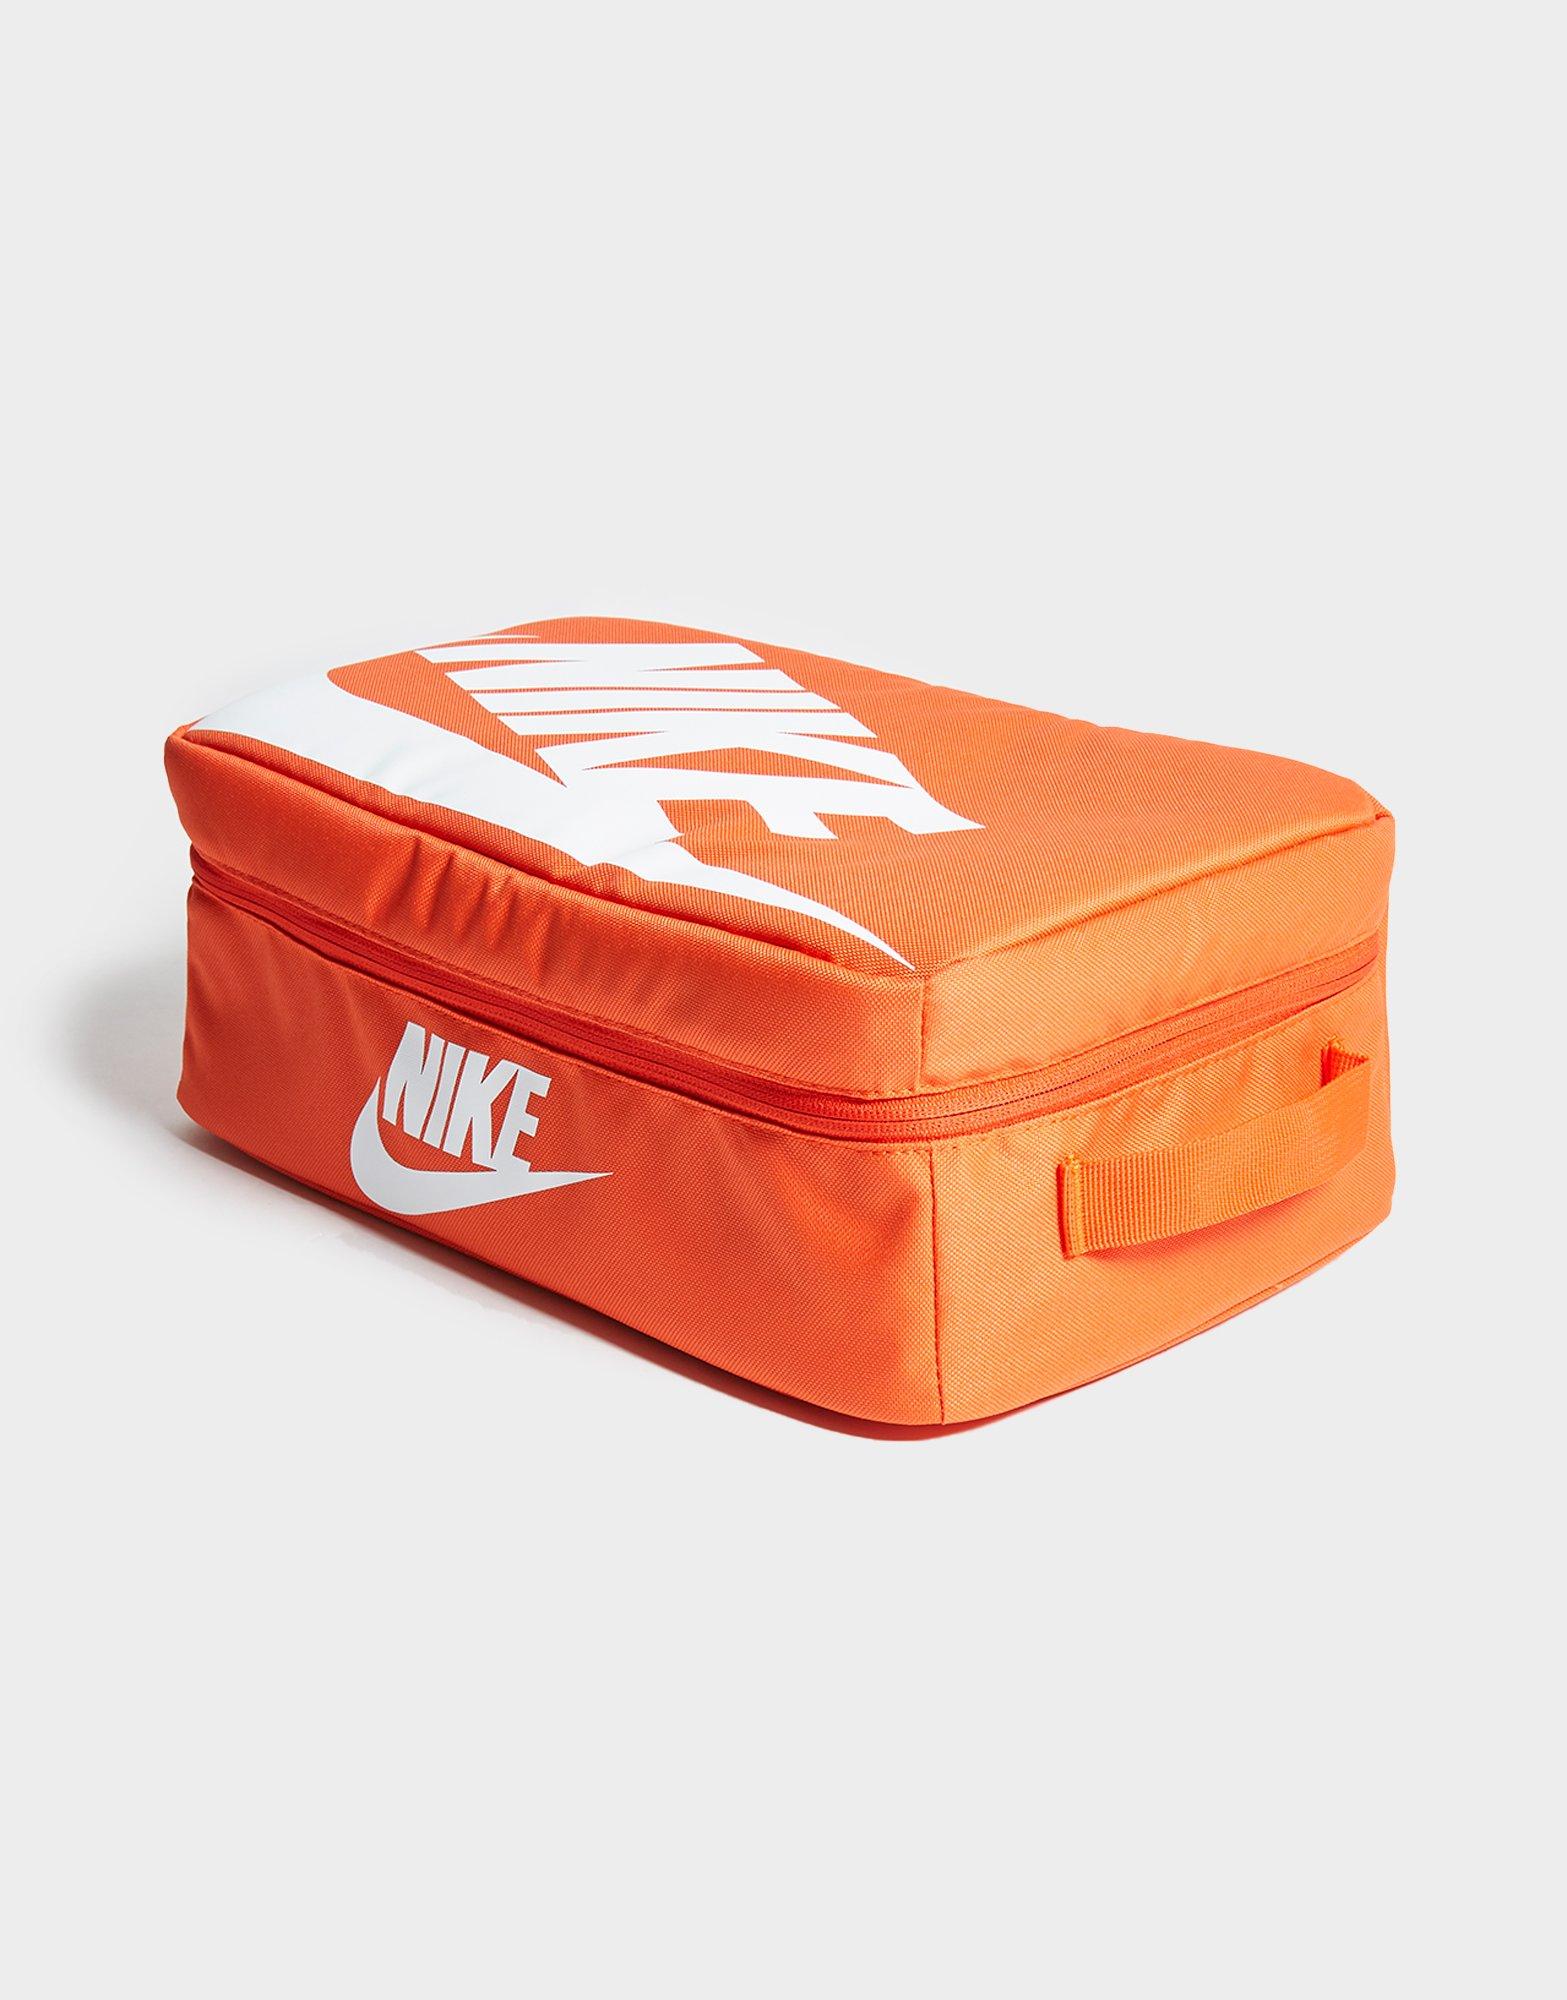 nike shoe box bag orange